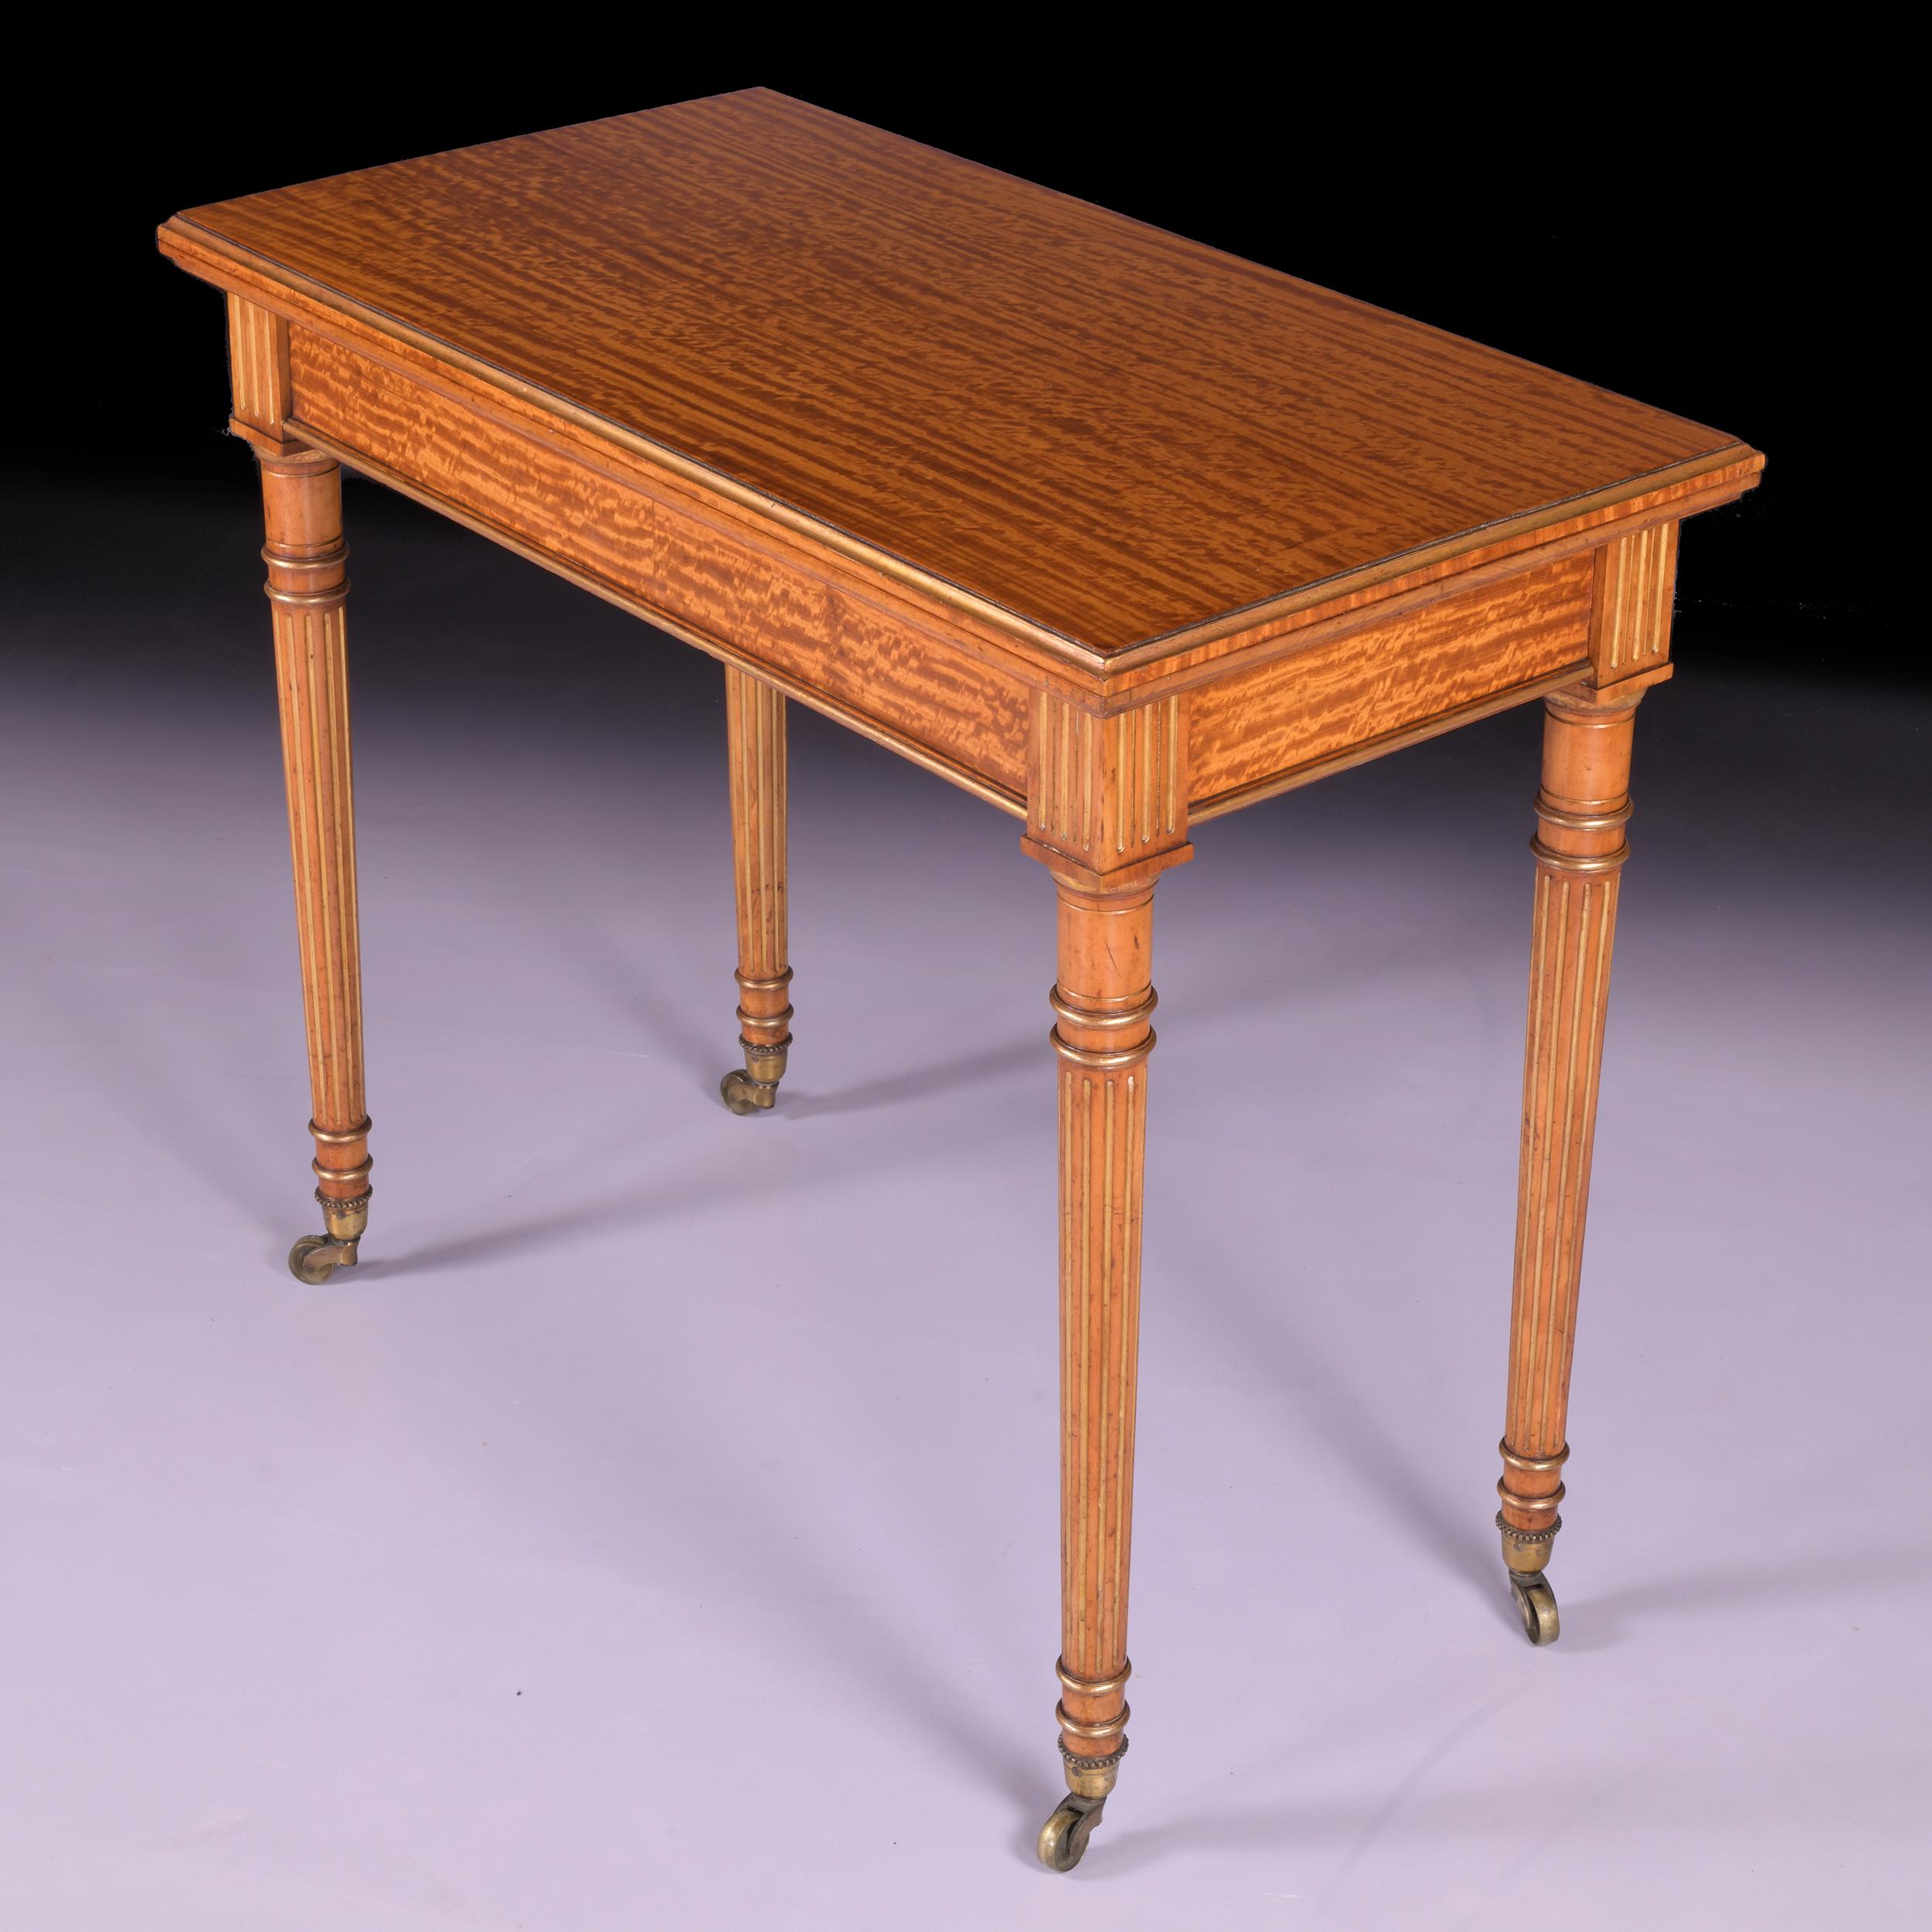 Superbe table de jeu du 19ème siècle en bois de satin et bois doré, le plateau rectangulaire rabattable avec un bord moulé doré, s'ouvrant par un télescope sur une surface de jeu en brique violette, au-dessus d'une frise unie, reposant sur des pieds